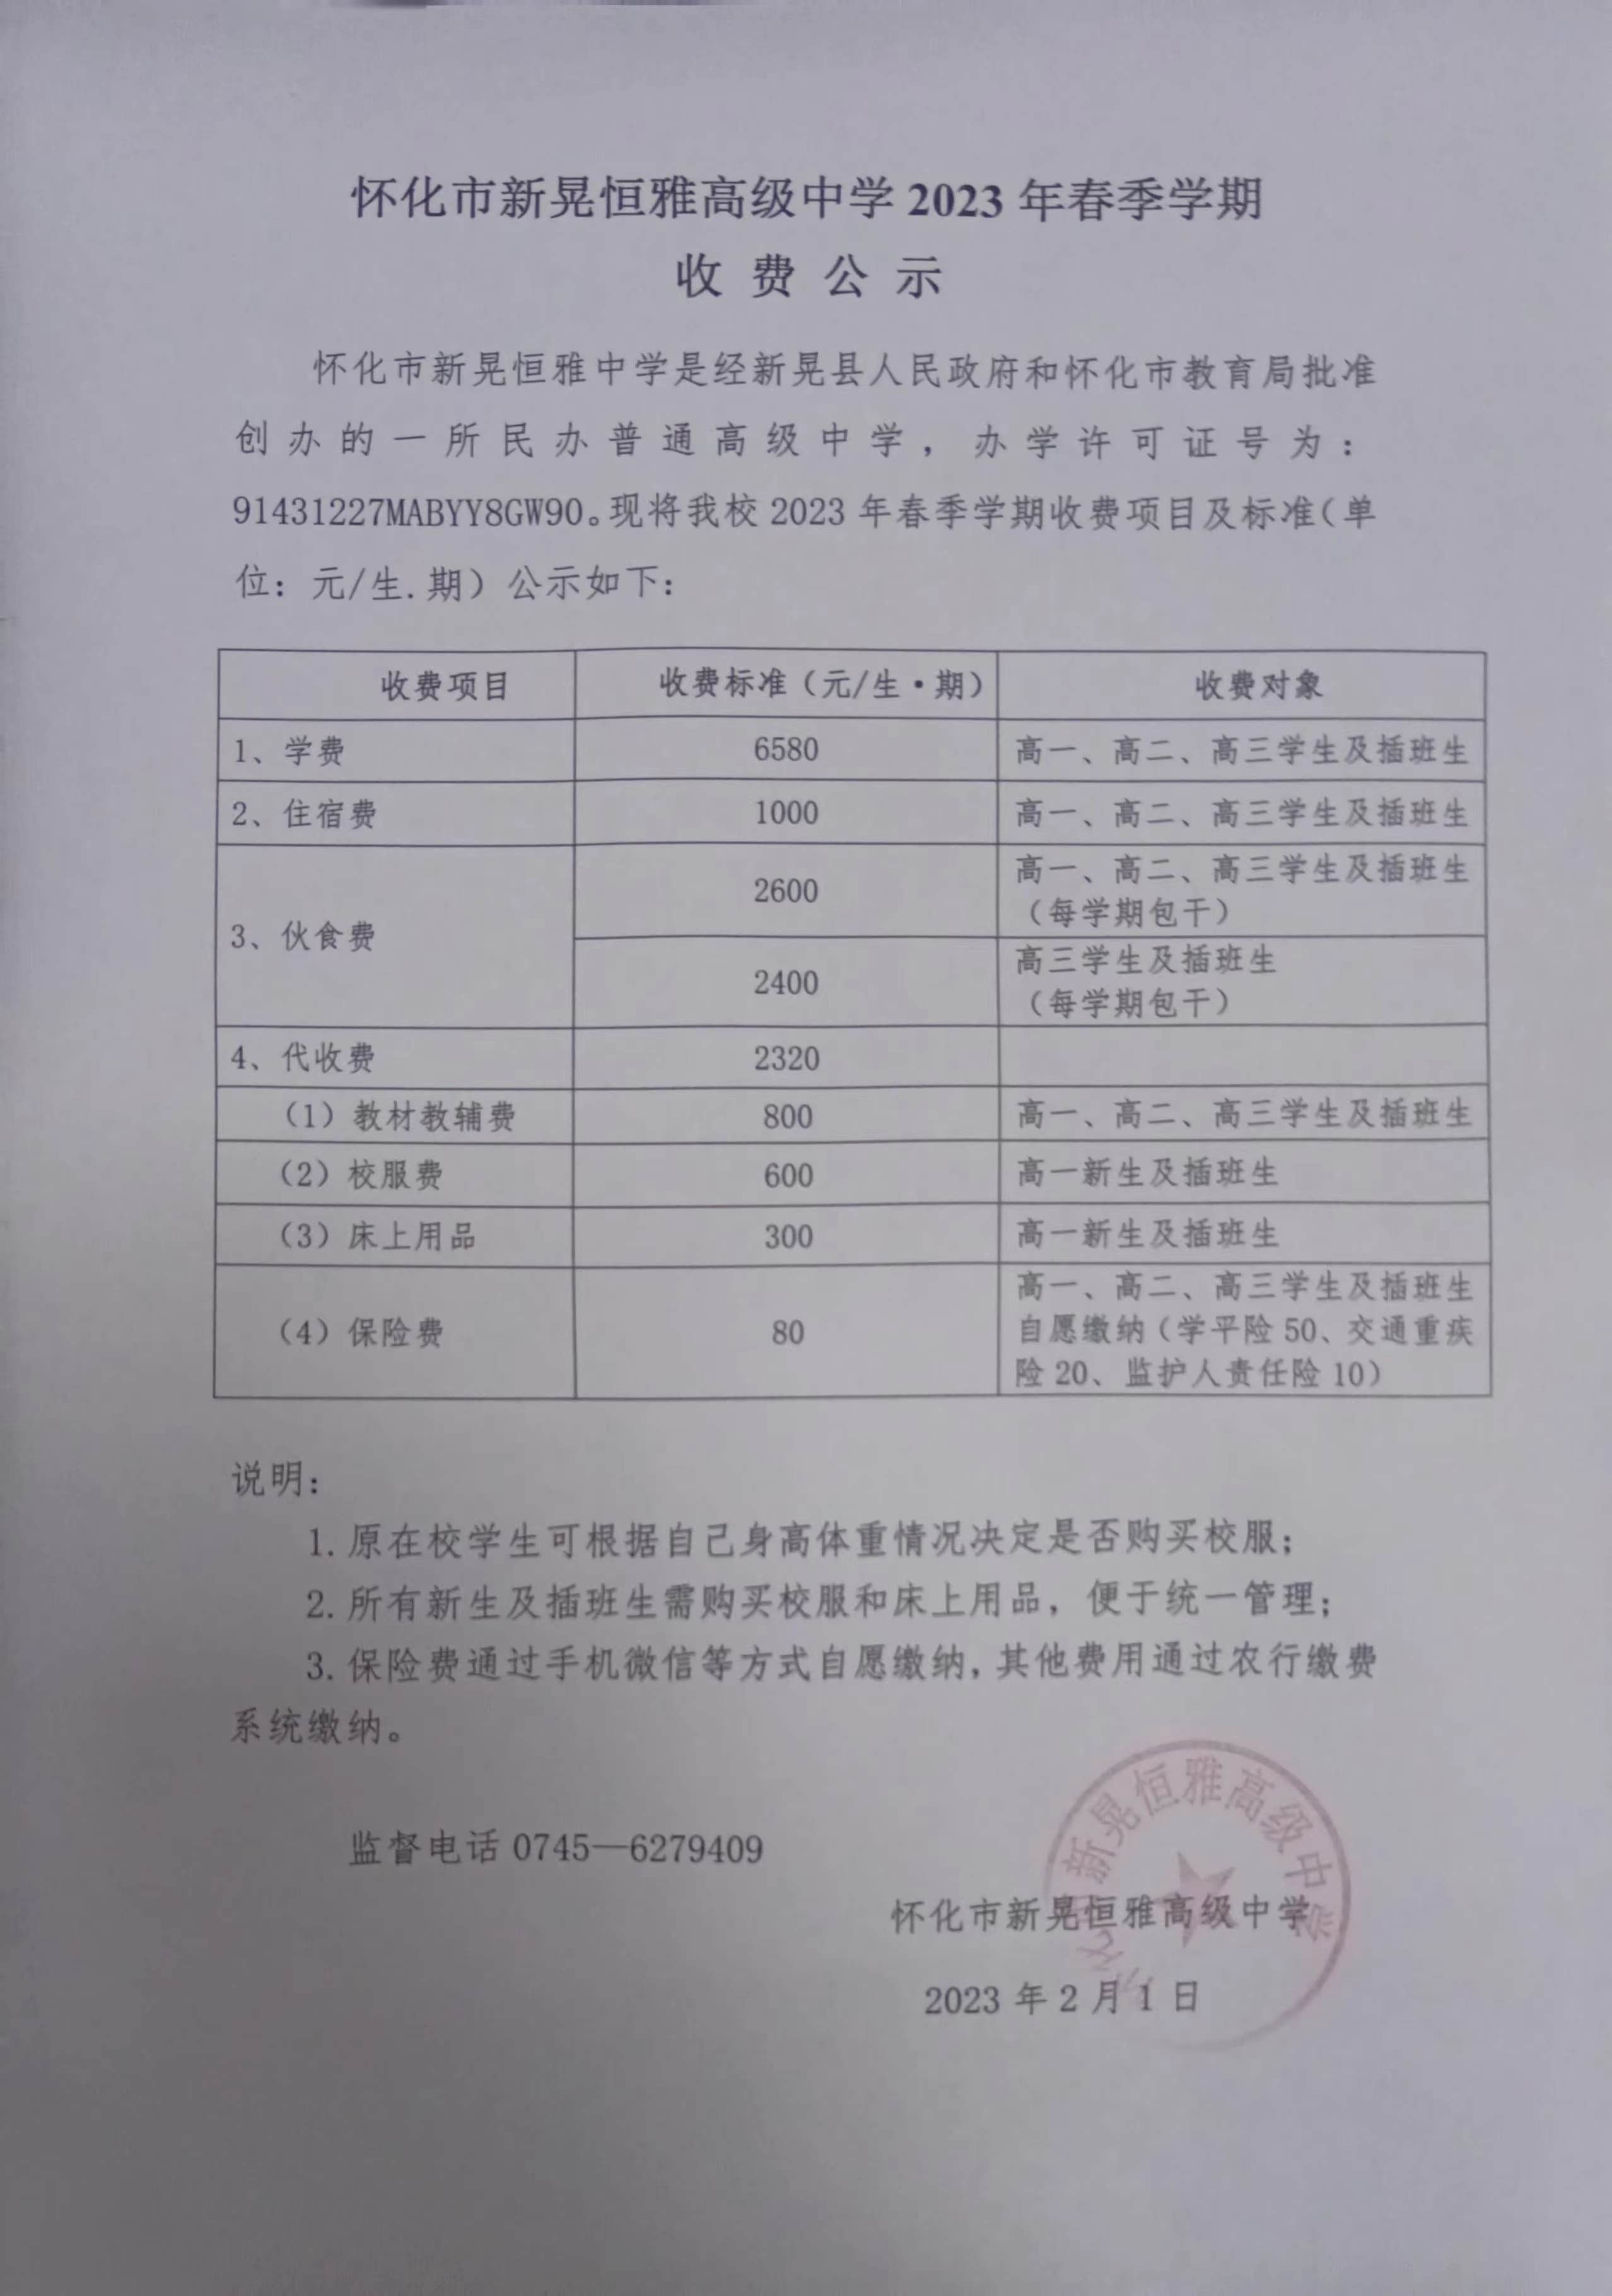 懷化市新晃恒雅高級中學2023年春季學期收費公 示